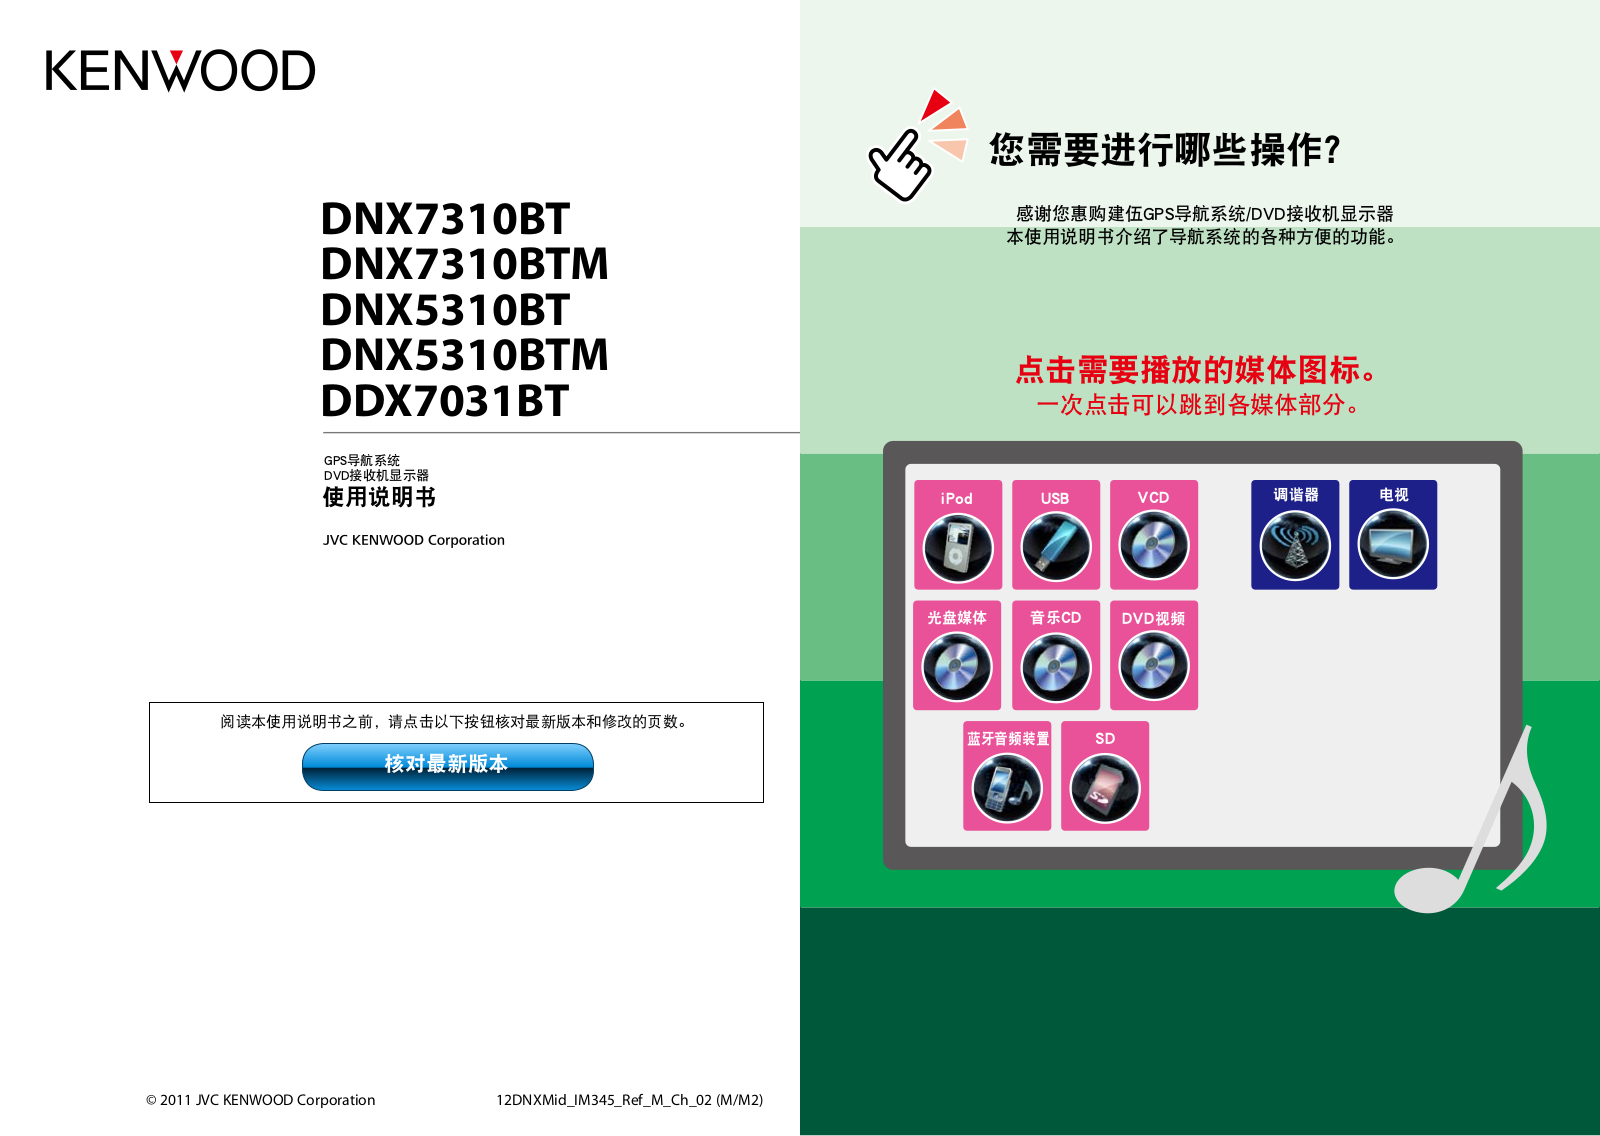 Kenwood DNX7310BTM, DNX5310BTM, DNX5310BT, DNX7310BT, DDX7031BT Manual